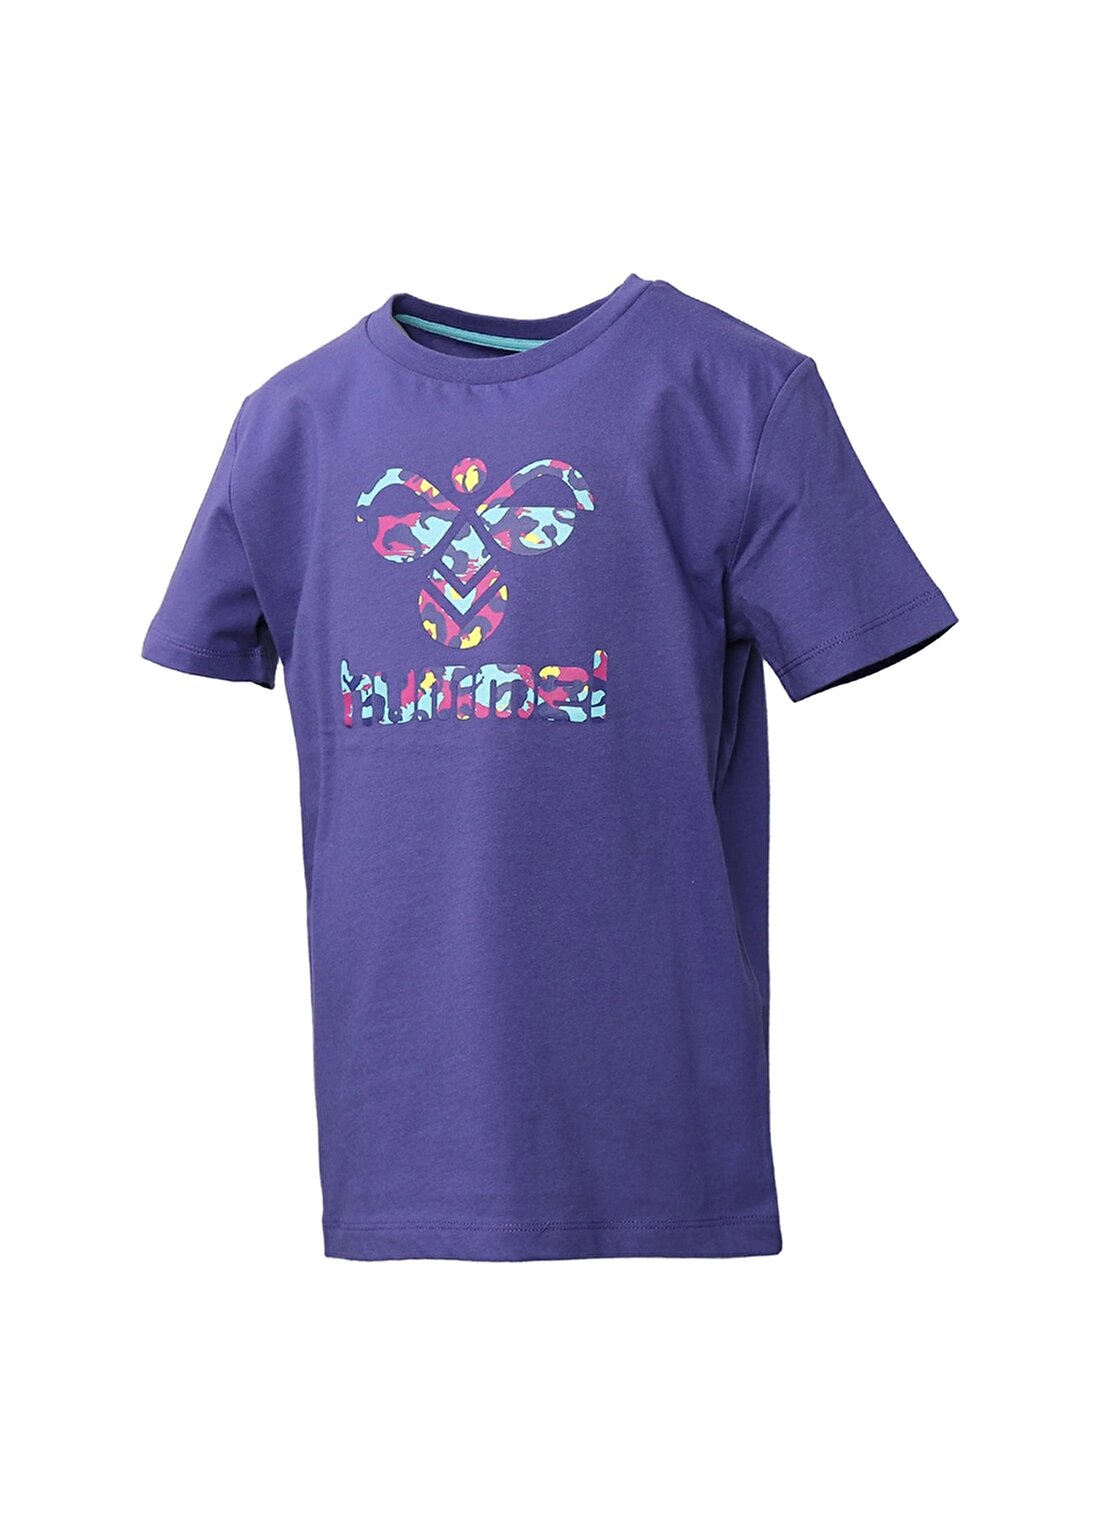 Hummel ALNON T-SHIRT S/S Mavi Kız Çocuk T-Shirt 911465-1047